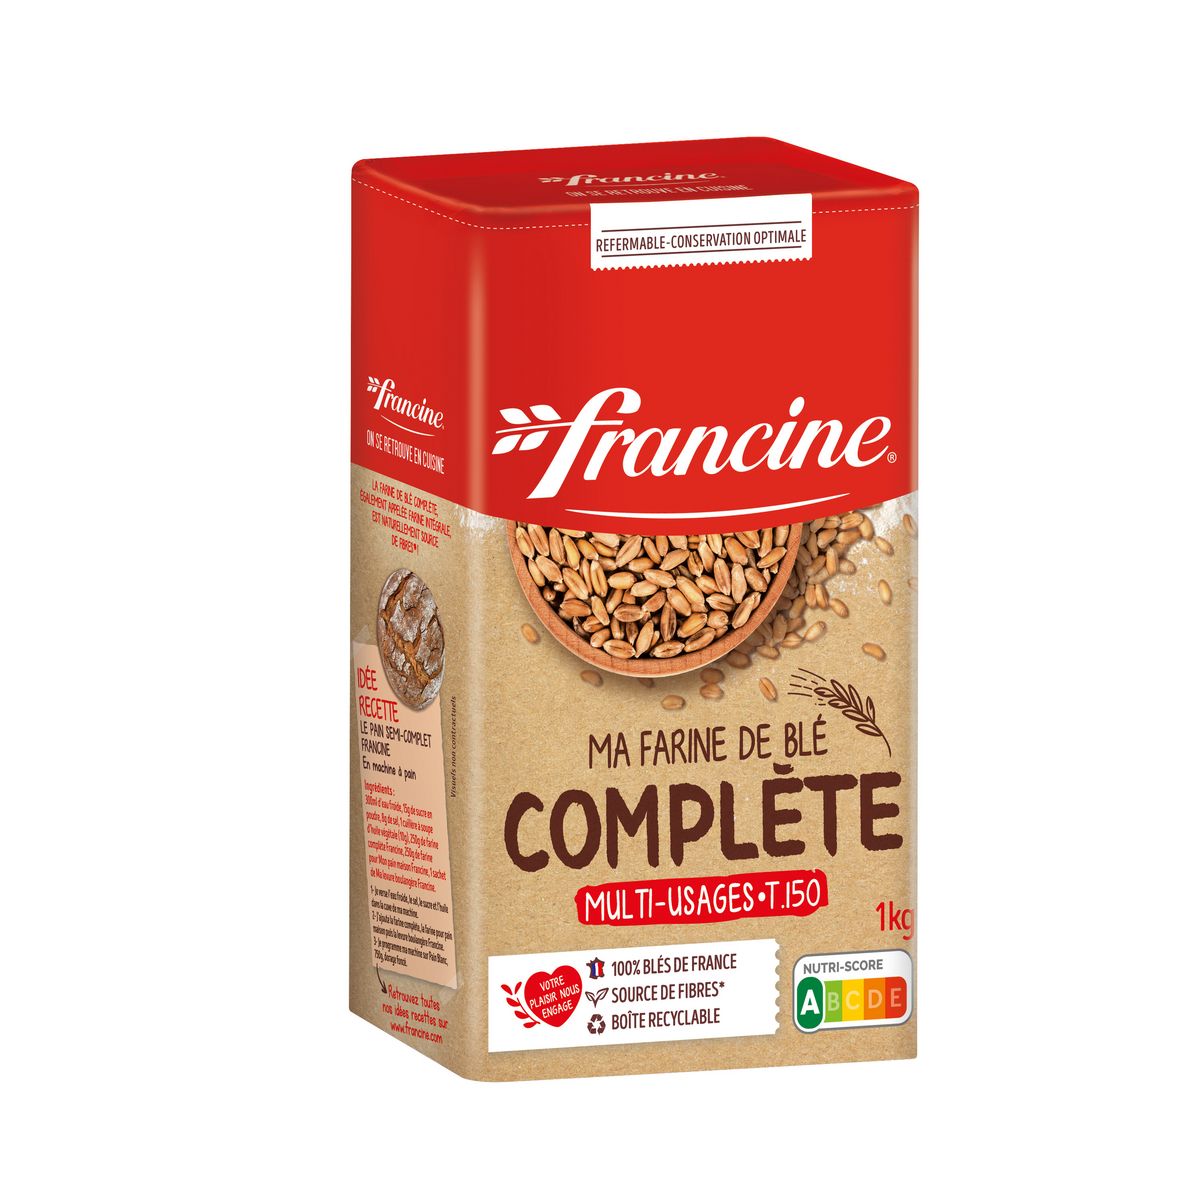 FRANCINE Farine de blé complète 1kg